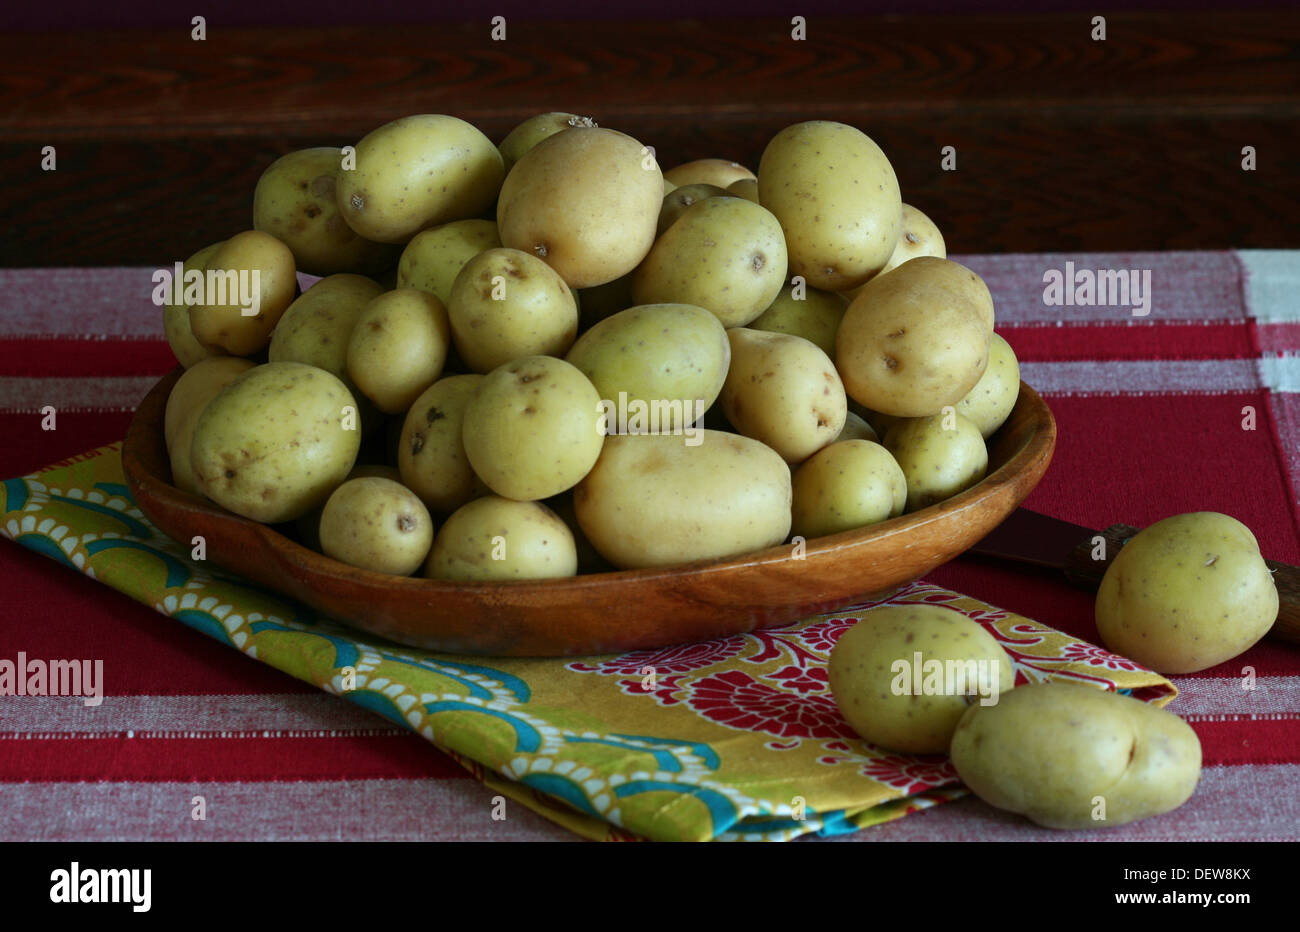 Tas de petites pommes de terre jaunes dans un bol en bois sur une place rouge et blanc mat. Banque D'Images